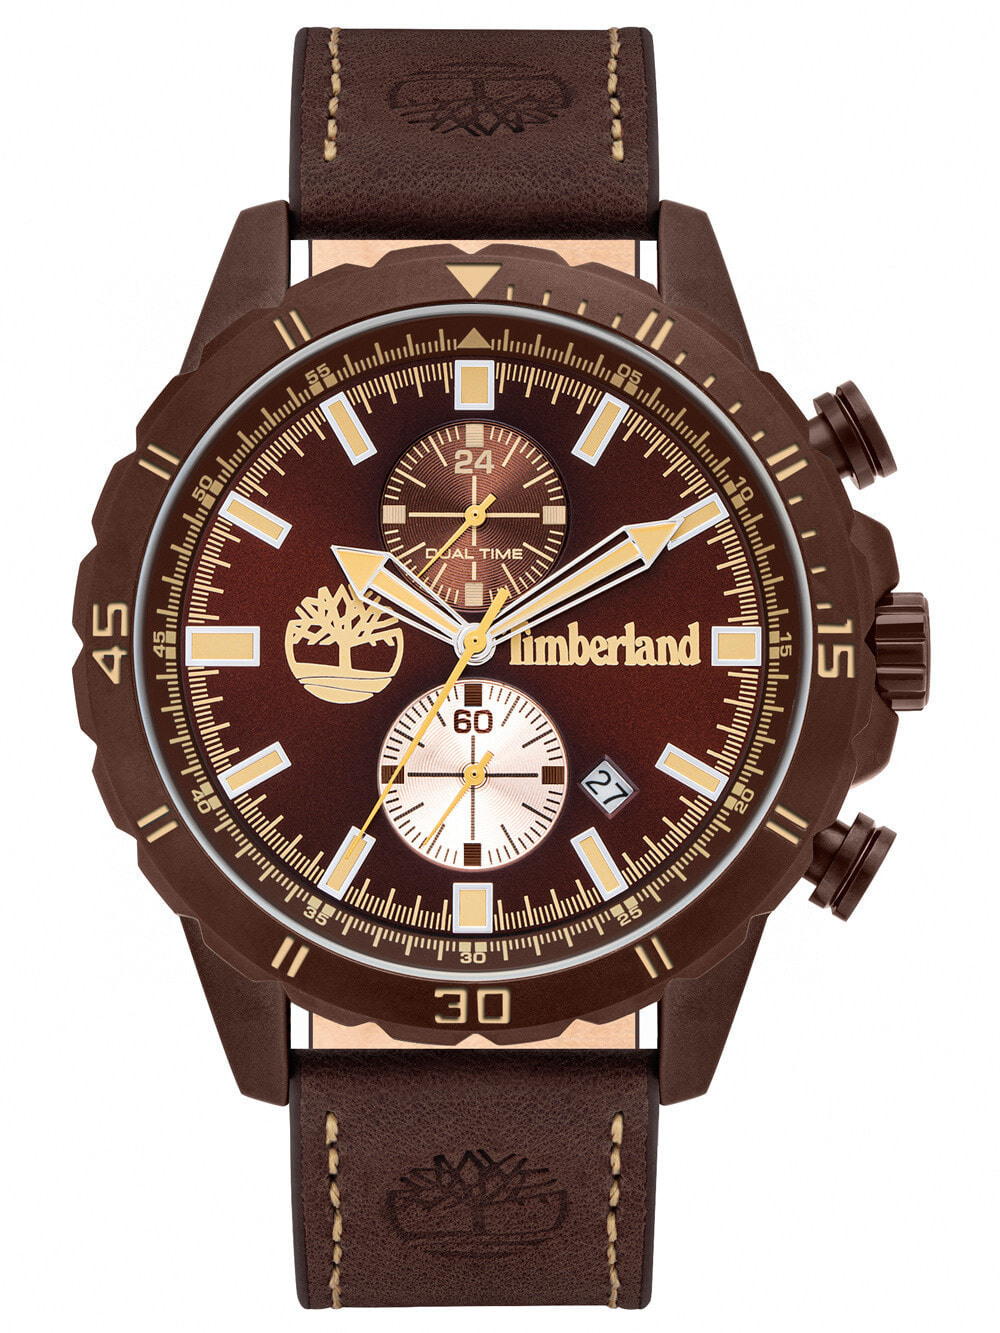 Мужские наручные часы с коричневым кожаным ремешком Timberland TBL16003JYBN.12 Dunford 46mm 5ATM